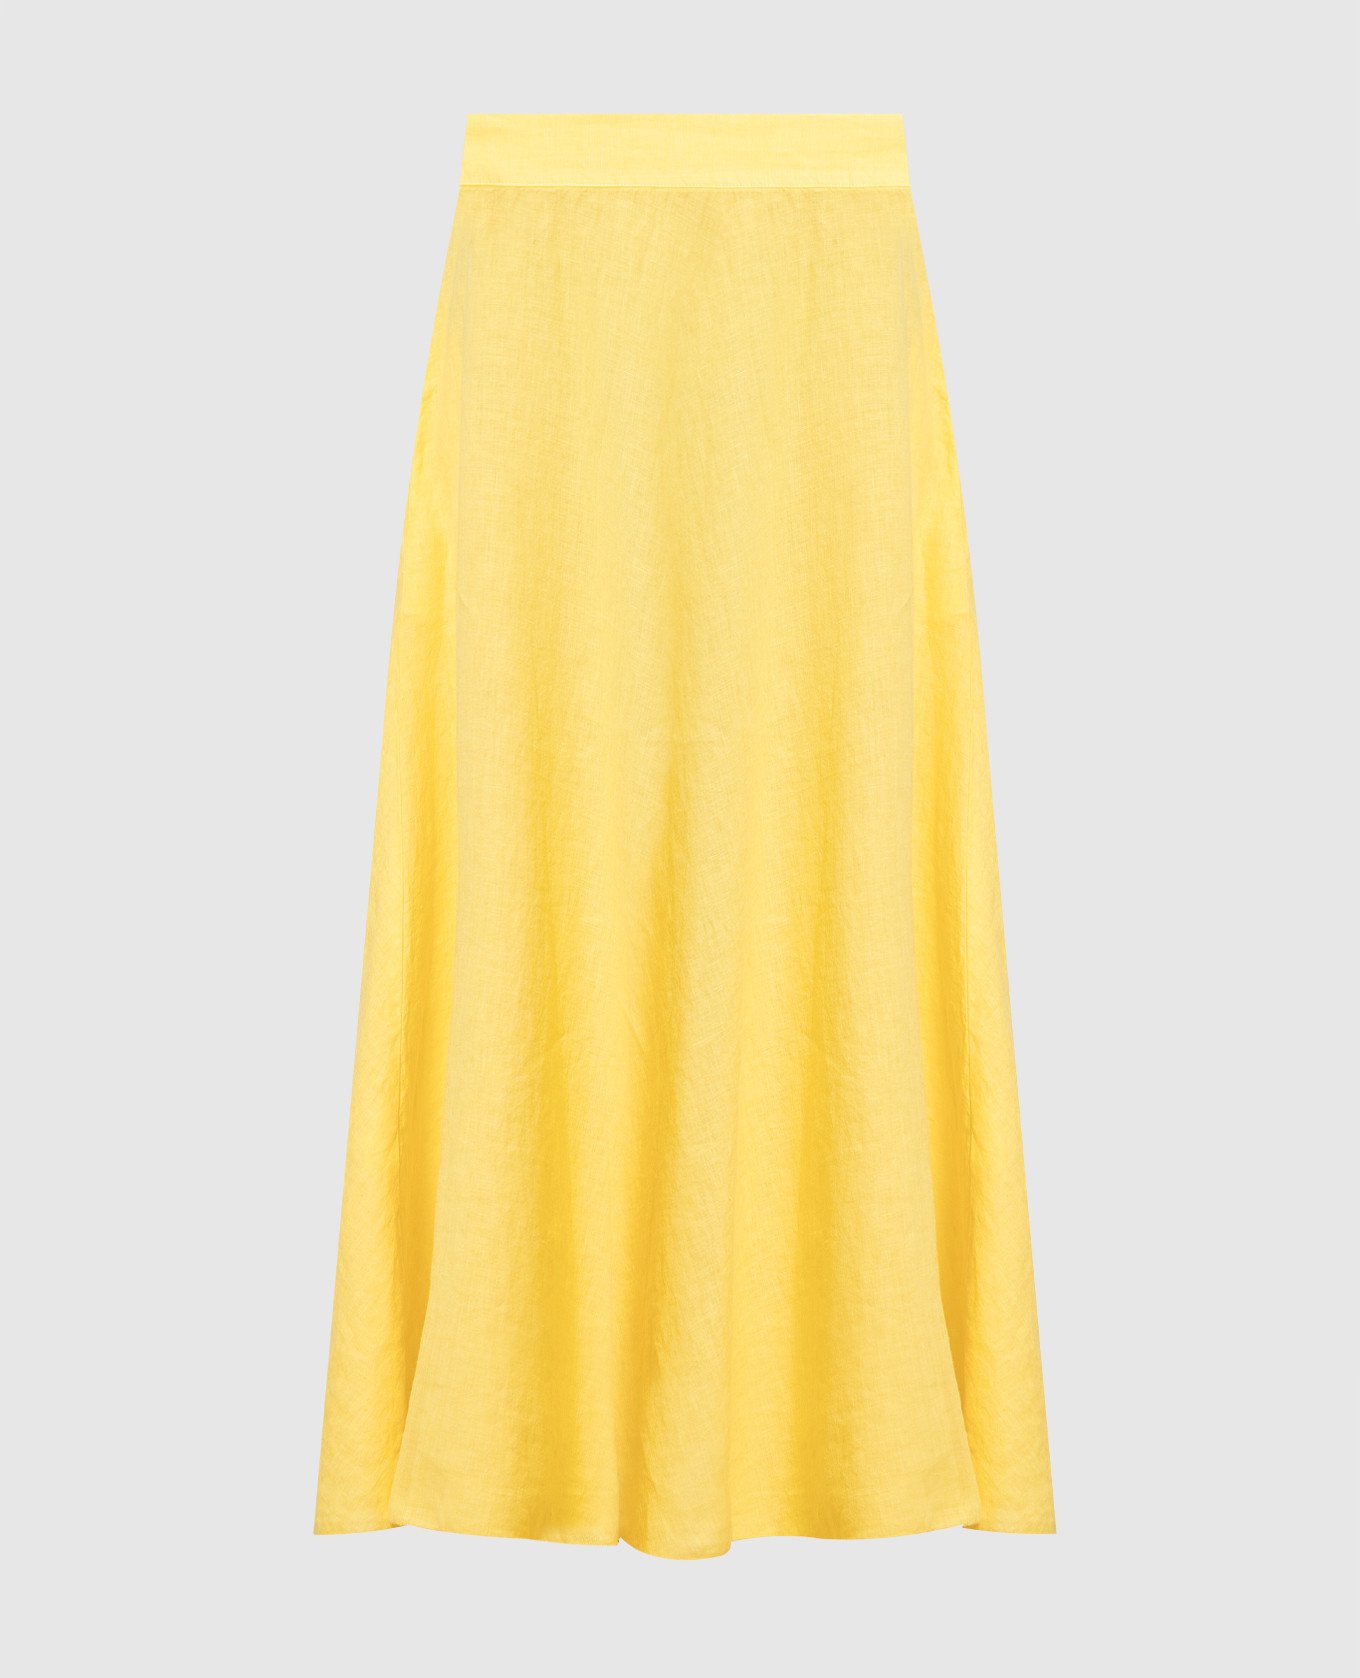 Yellow midi skirt made of linen